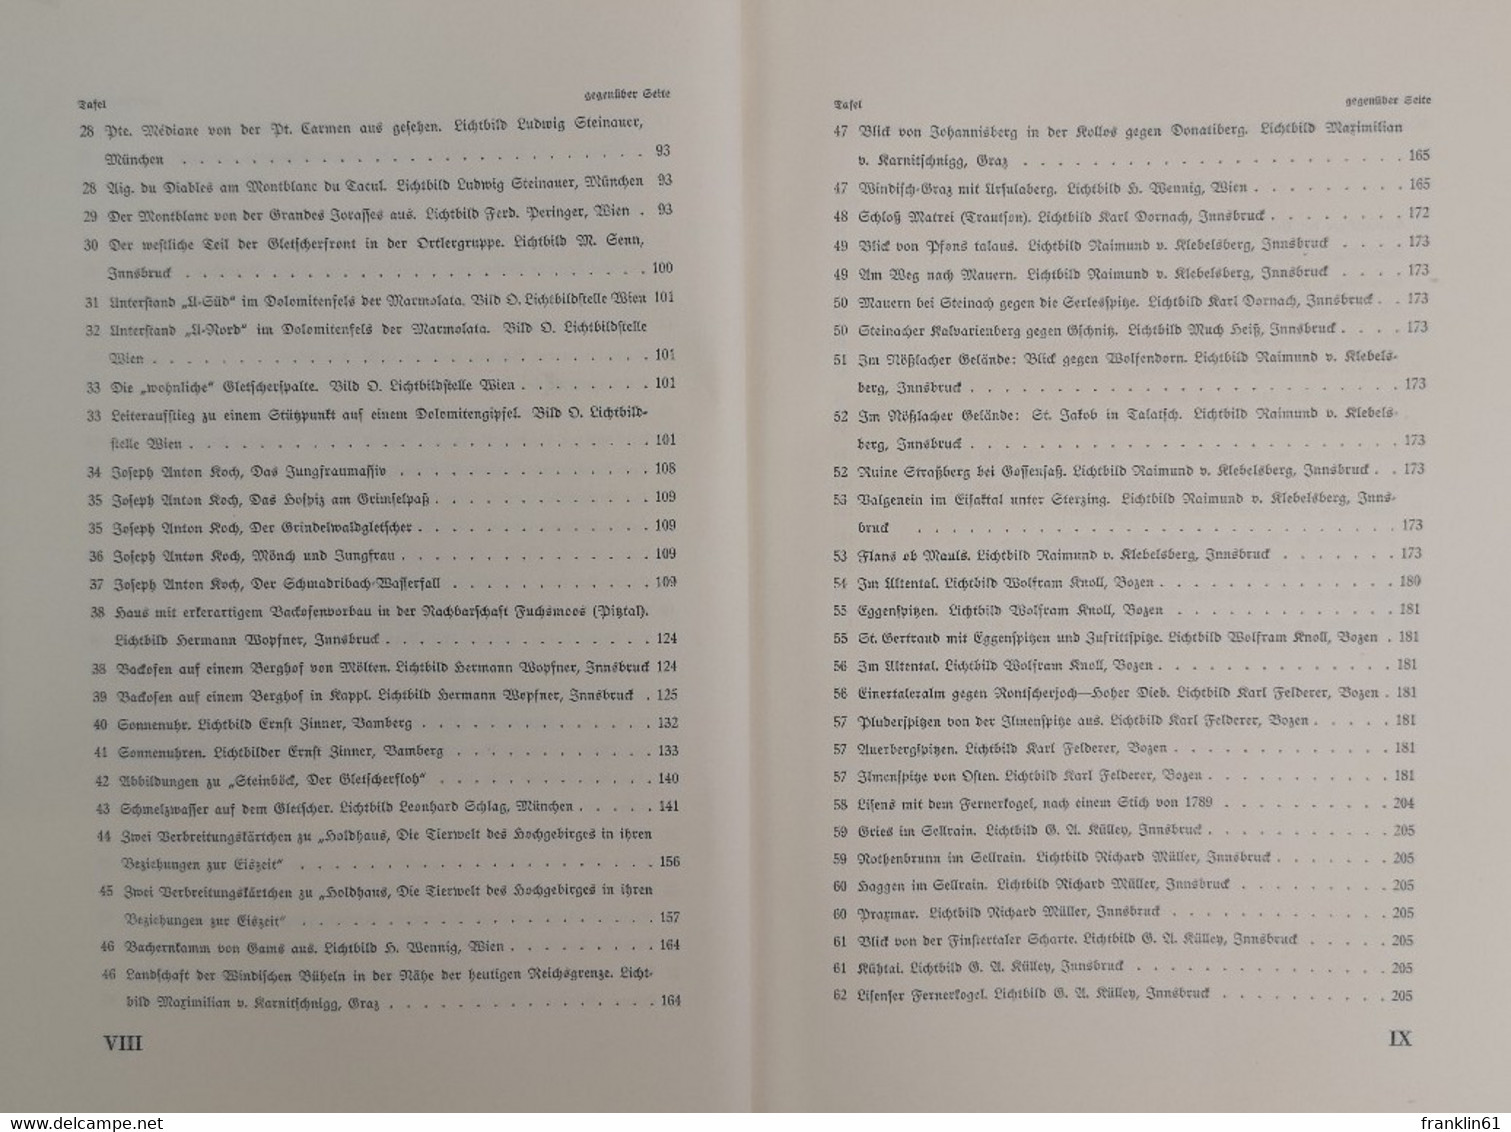 Zeitschrift des Deutschen Alpenvereins. (Jahrbuch). Jahrgang 1939. Band 70.